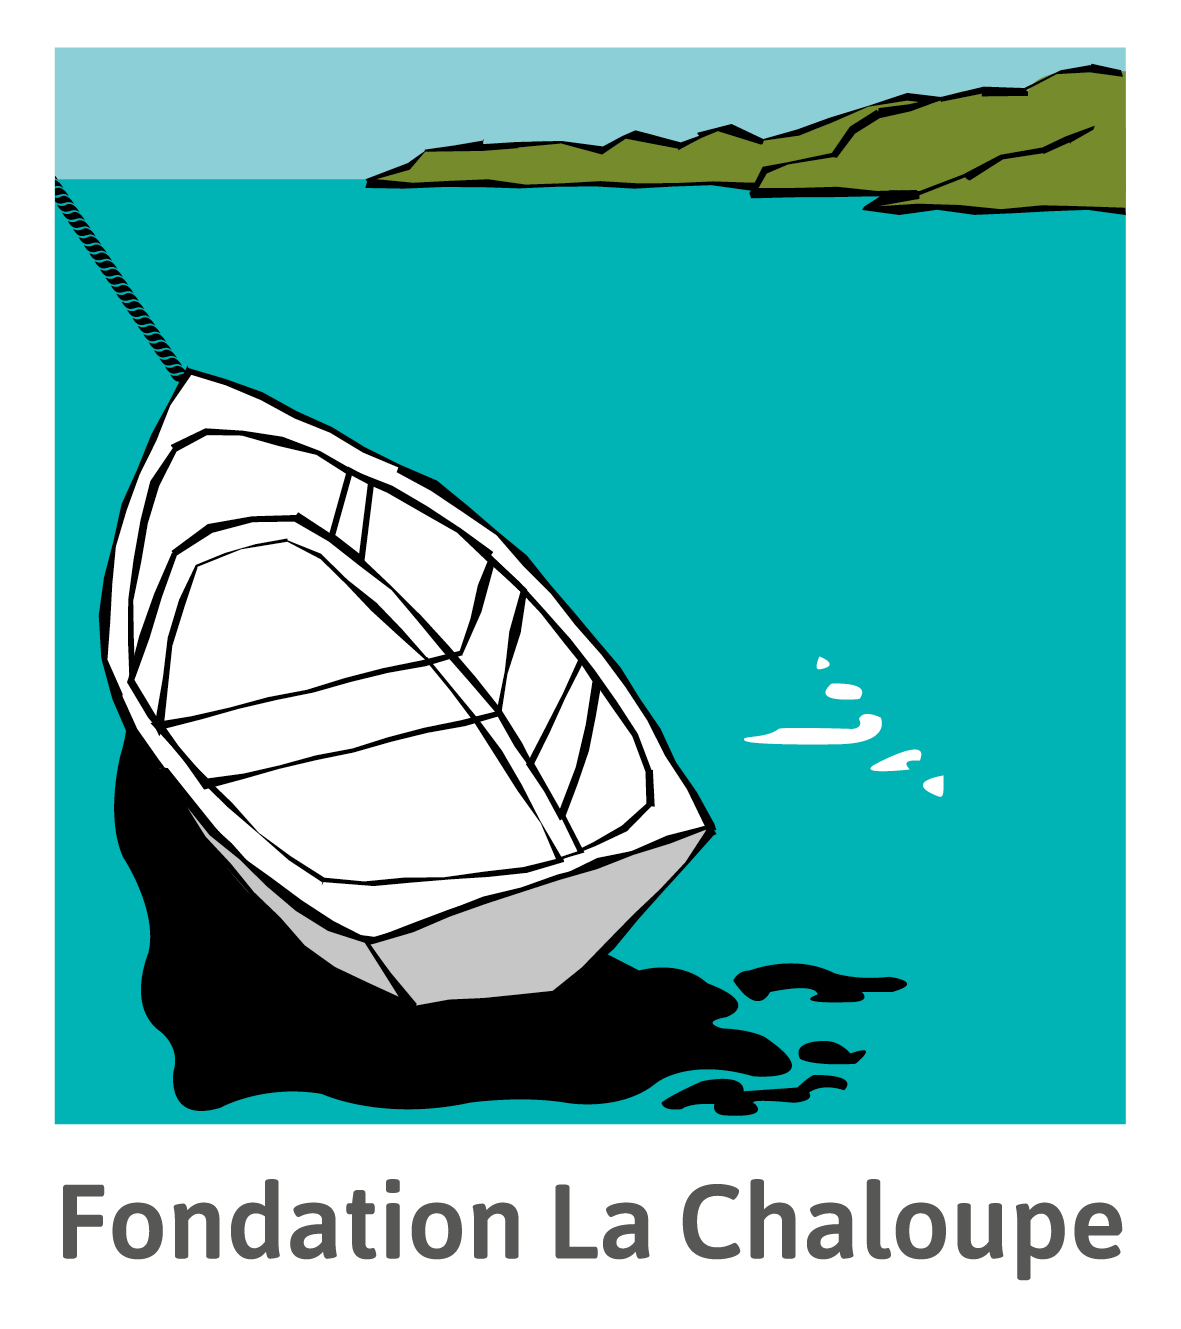 Fondation La Chaloupe